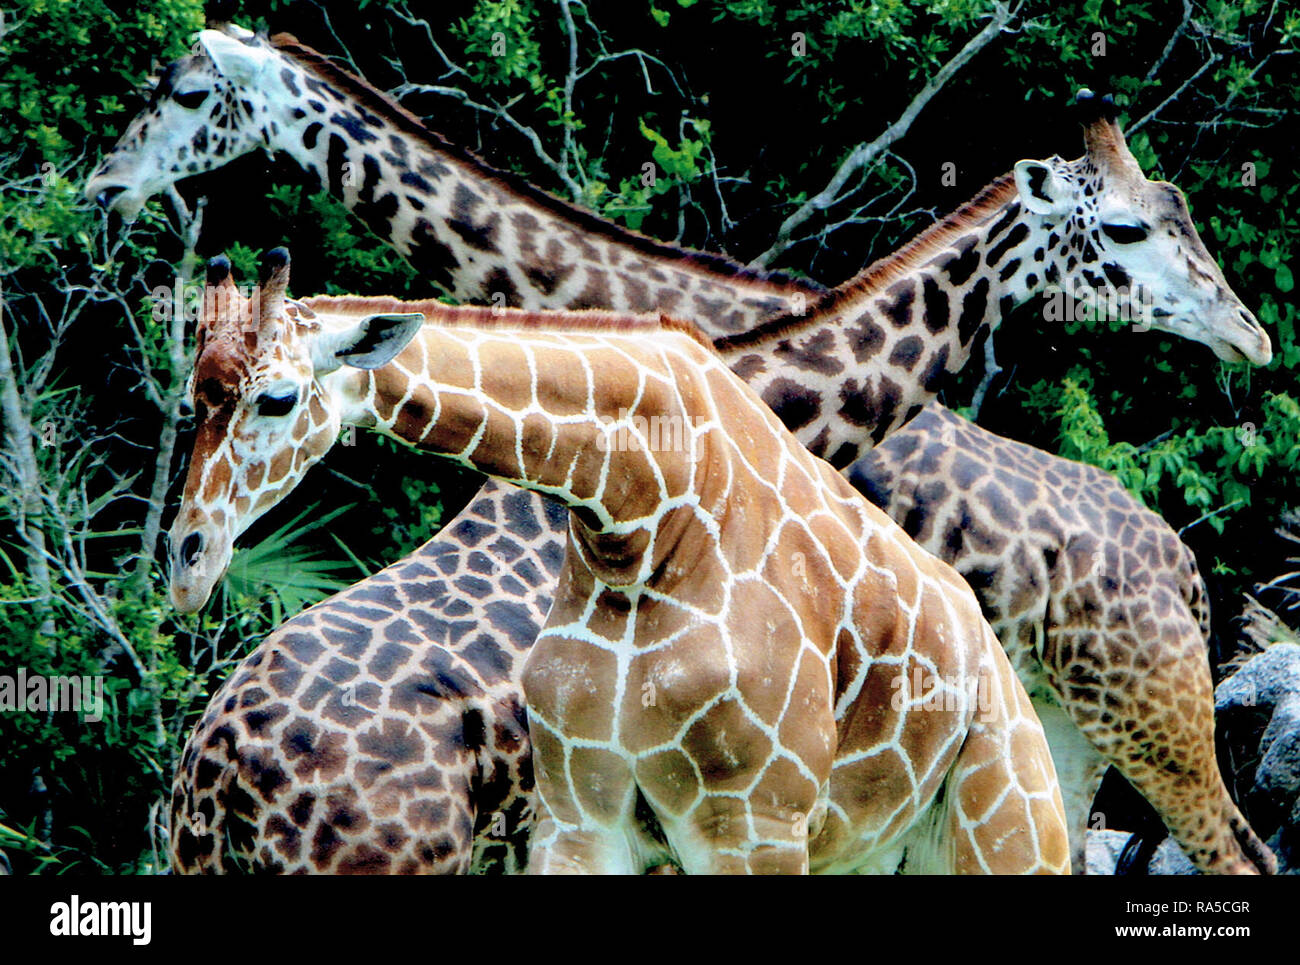 Three giraffes and necks Stock Photo